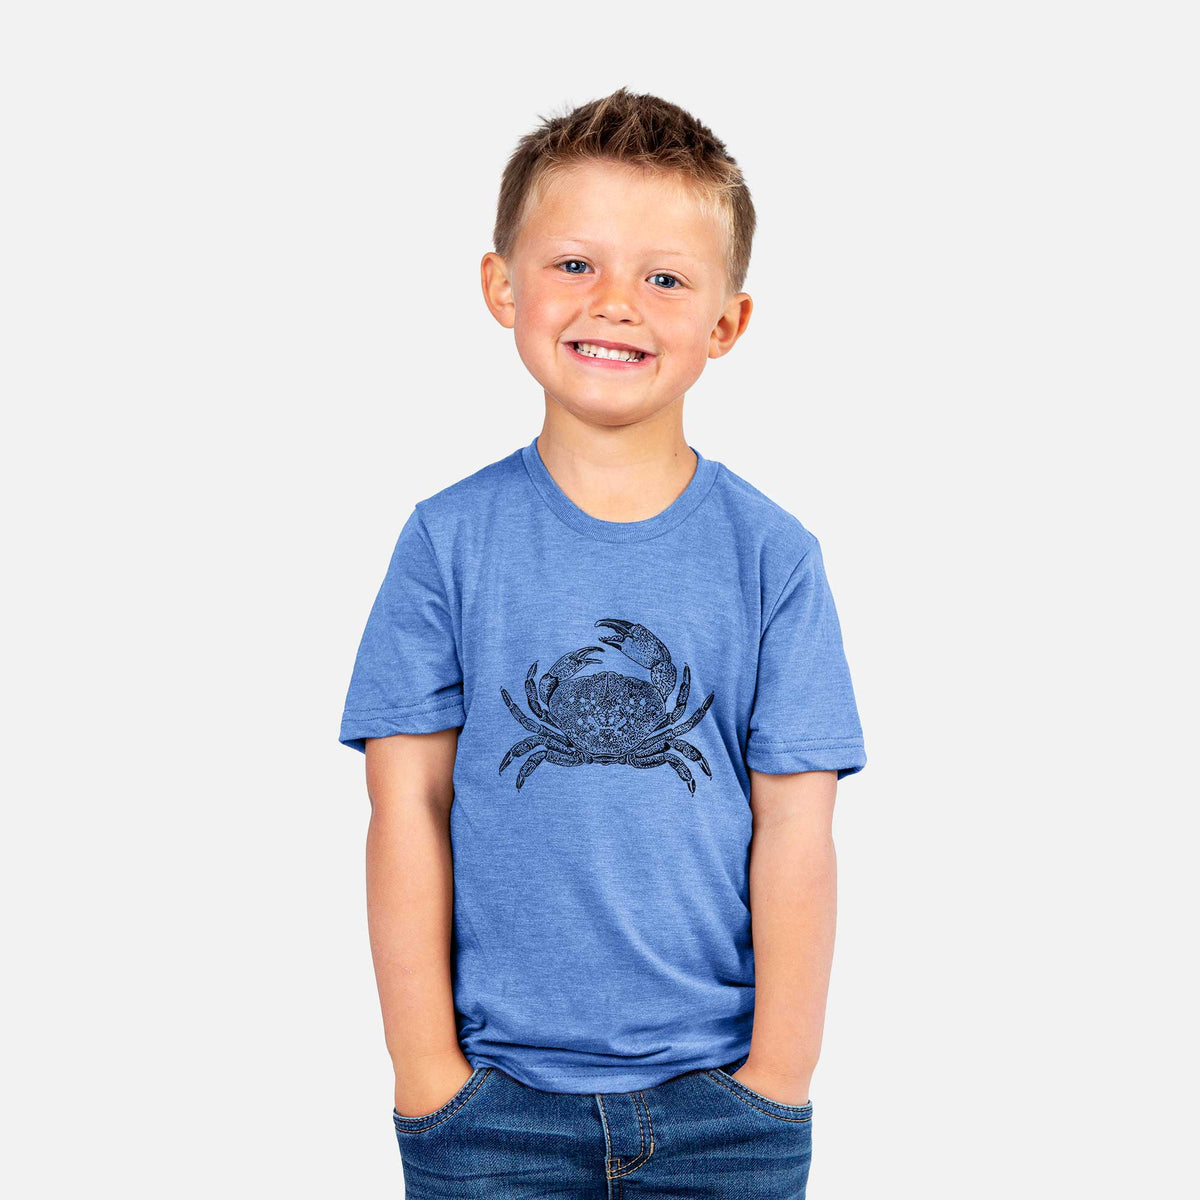 Dungeness Crab - Kids Shirt